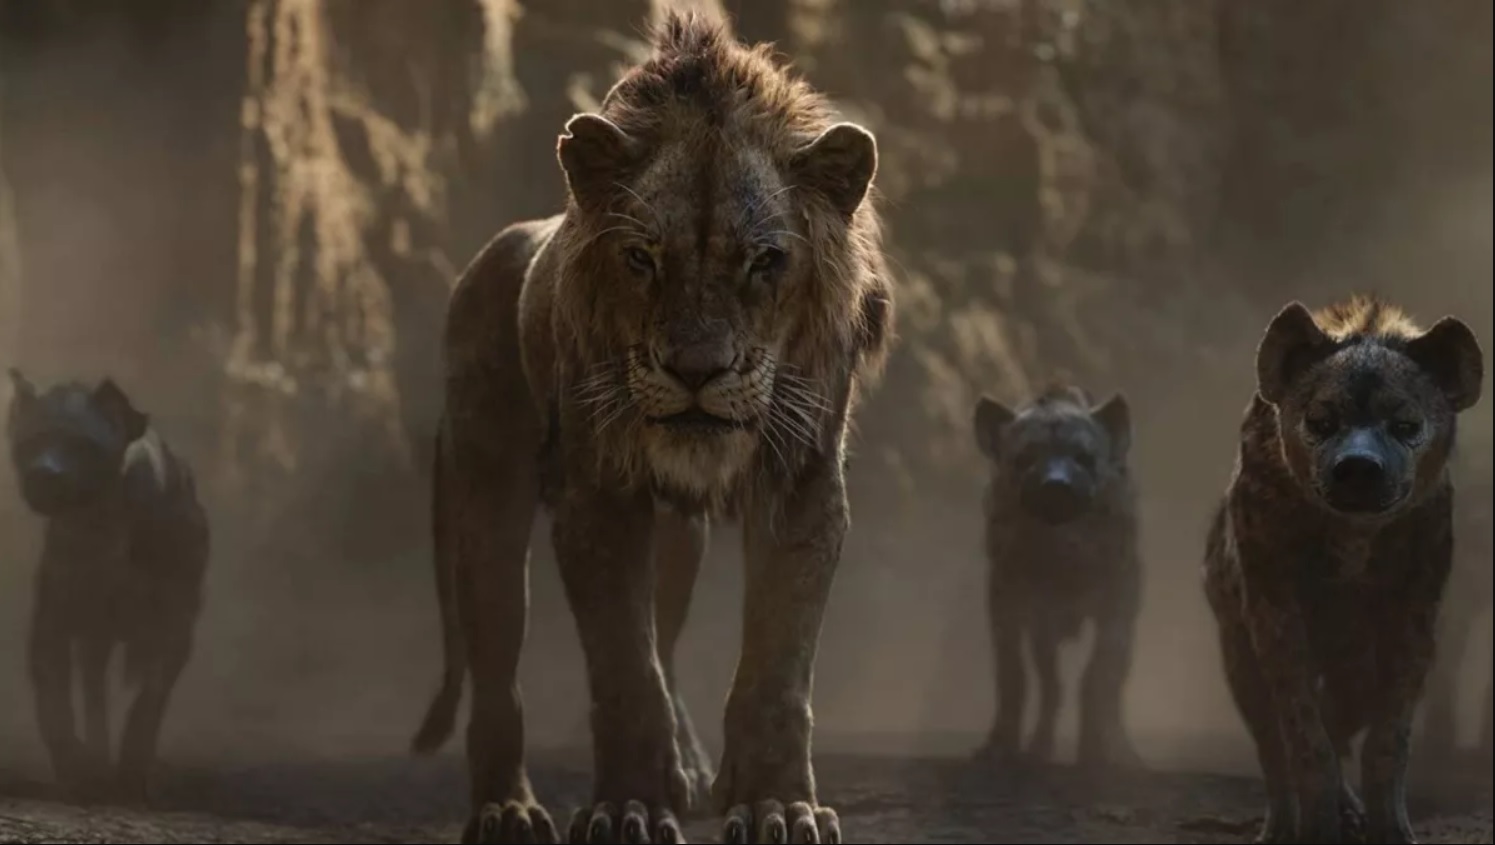 Mufasa: La precuela de El Rey Leon explorara la historia trasfondo de Scar, segun comento el actor que le dara voz al personaje